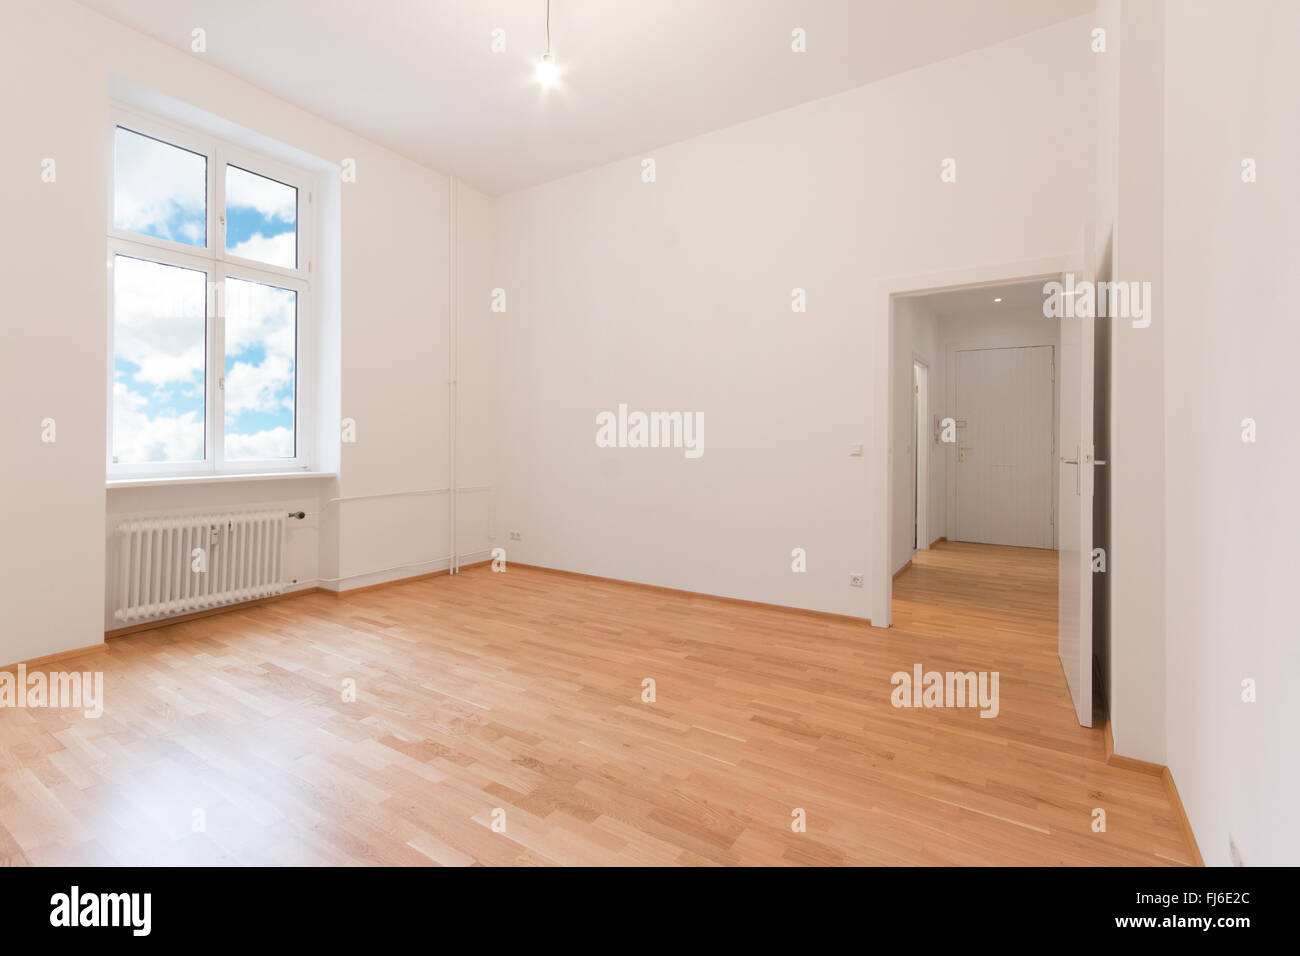 Rénové appartement - salle vide, murs blancs, parquet au sol Banque D'Images